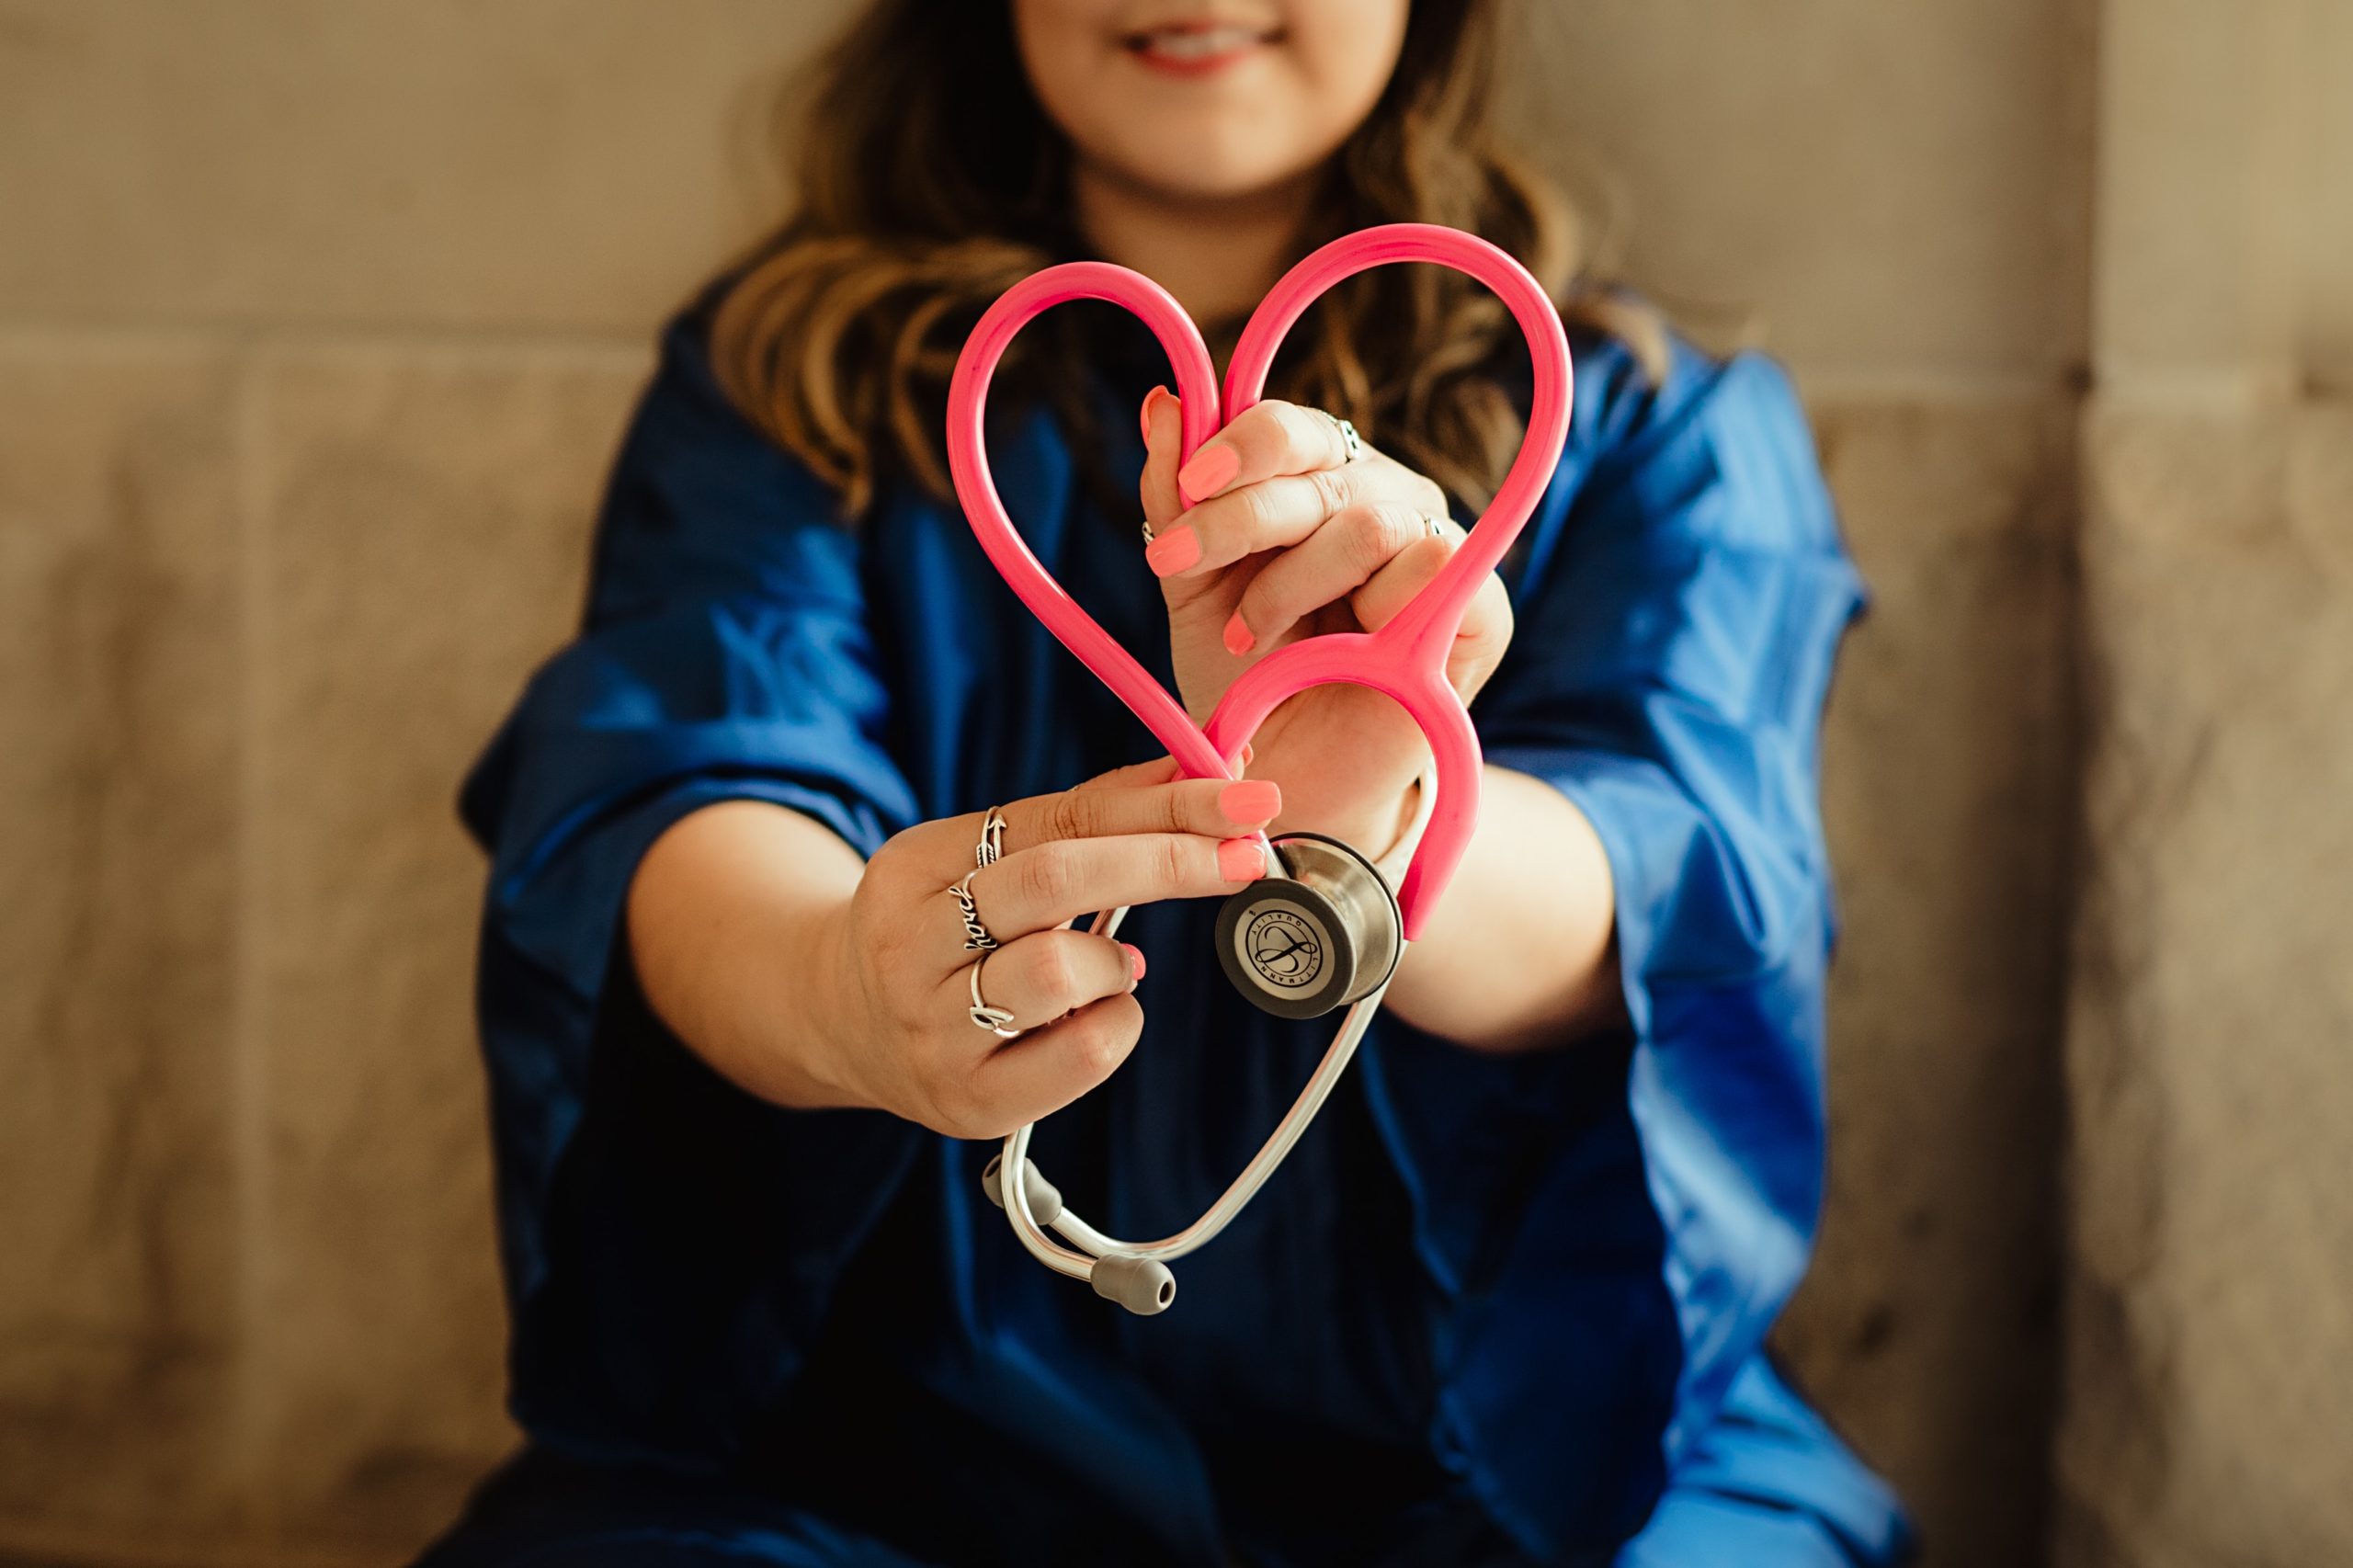 Kuvassa näkyy työvaatteisiin pukeutunut hoitaja tai lääkäri, joka pitelee käsissään stetoskooppia. Stetoskoopin pinkki johto on taitettu sydämen muotoiseksi kuvioksi.